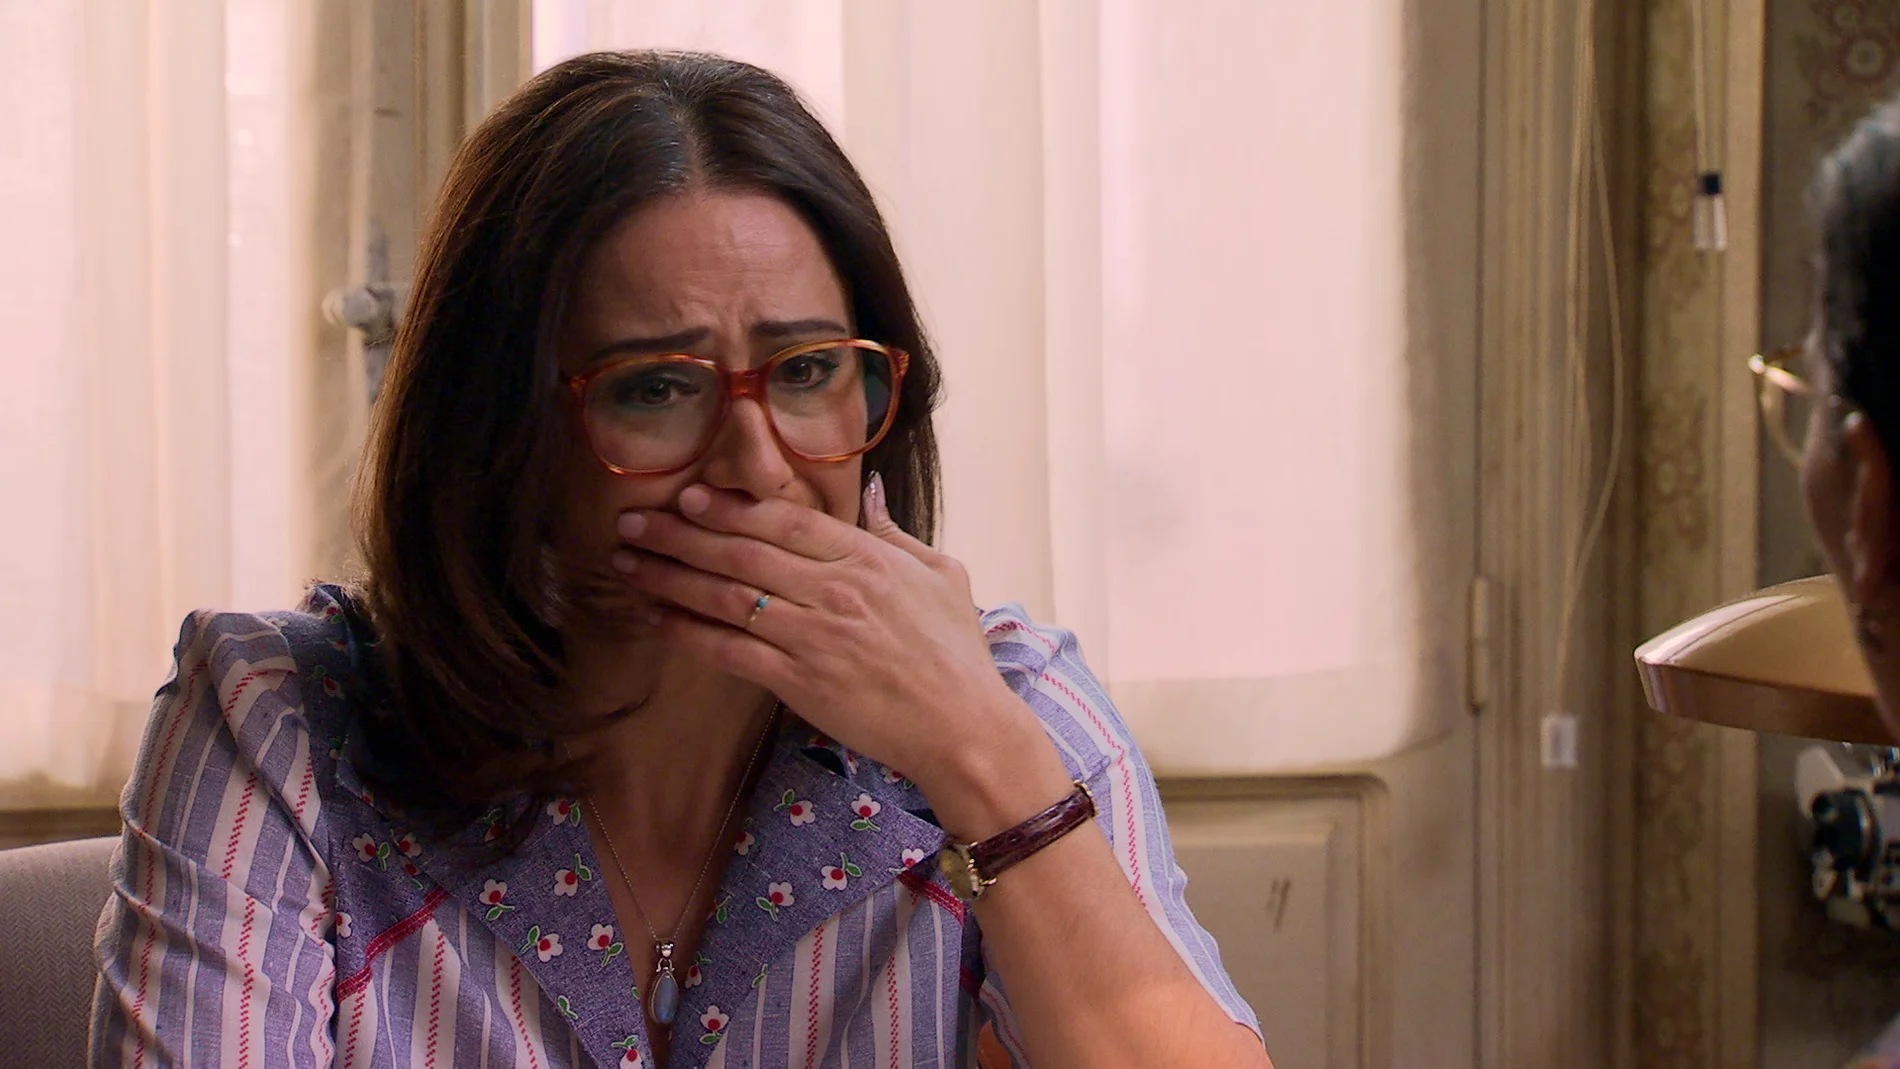 Cristina descubre que llega tarde para confesarle toda la verdad sobre su embarazo a Guillermo